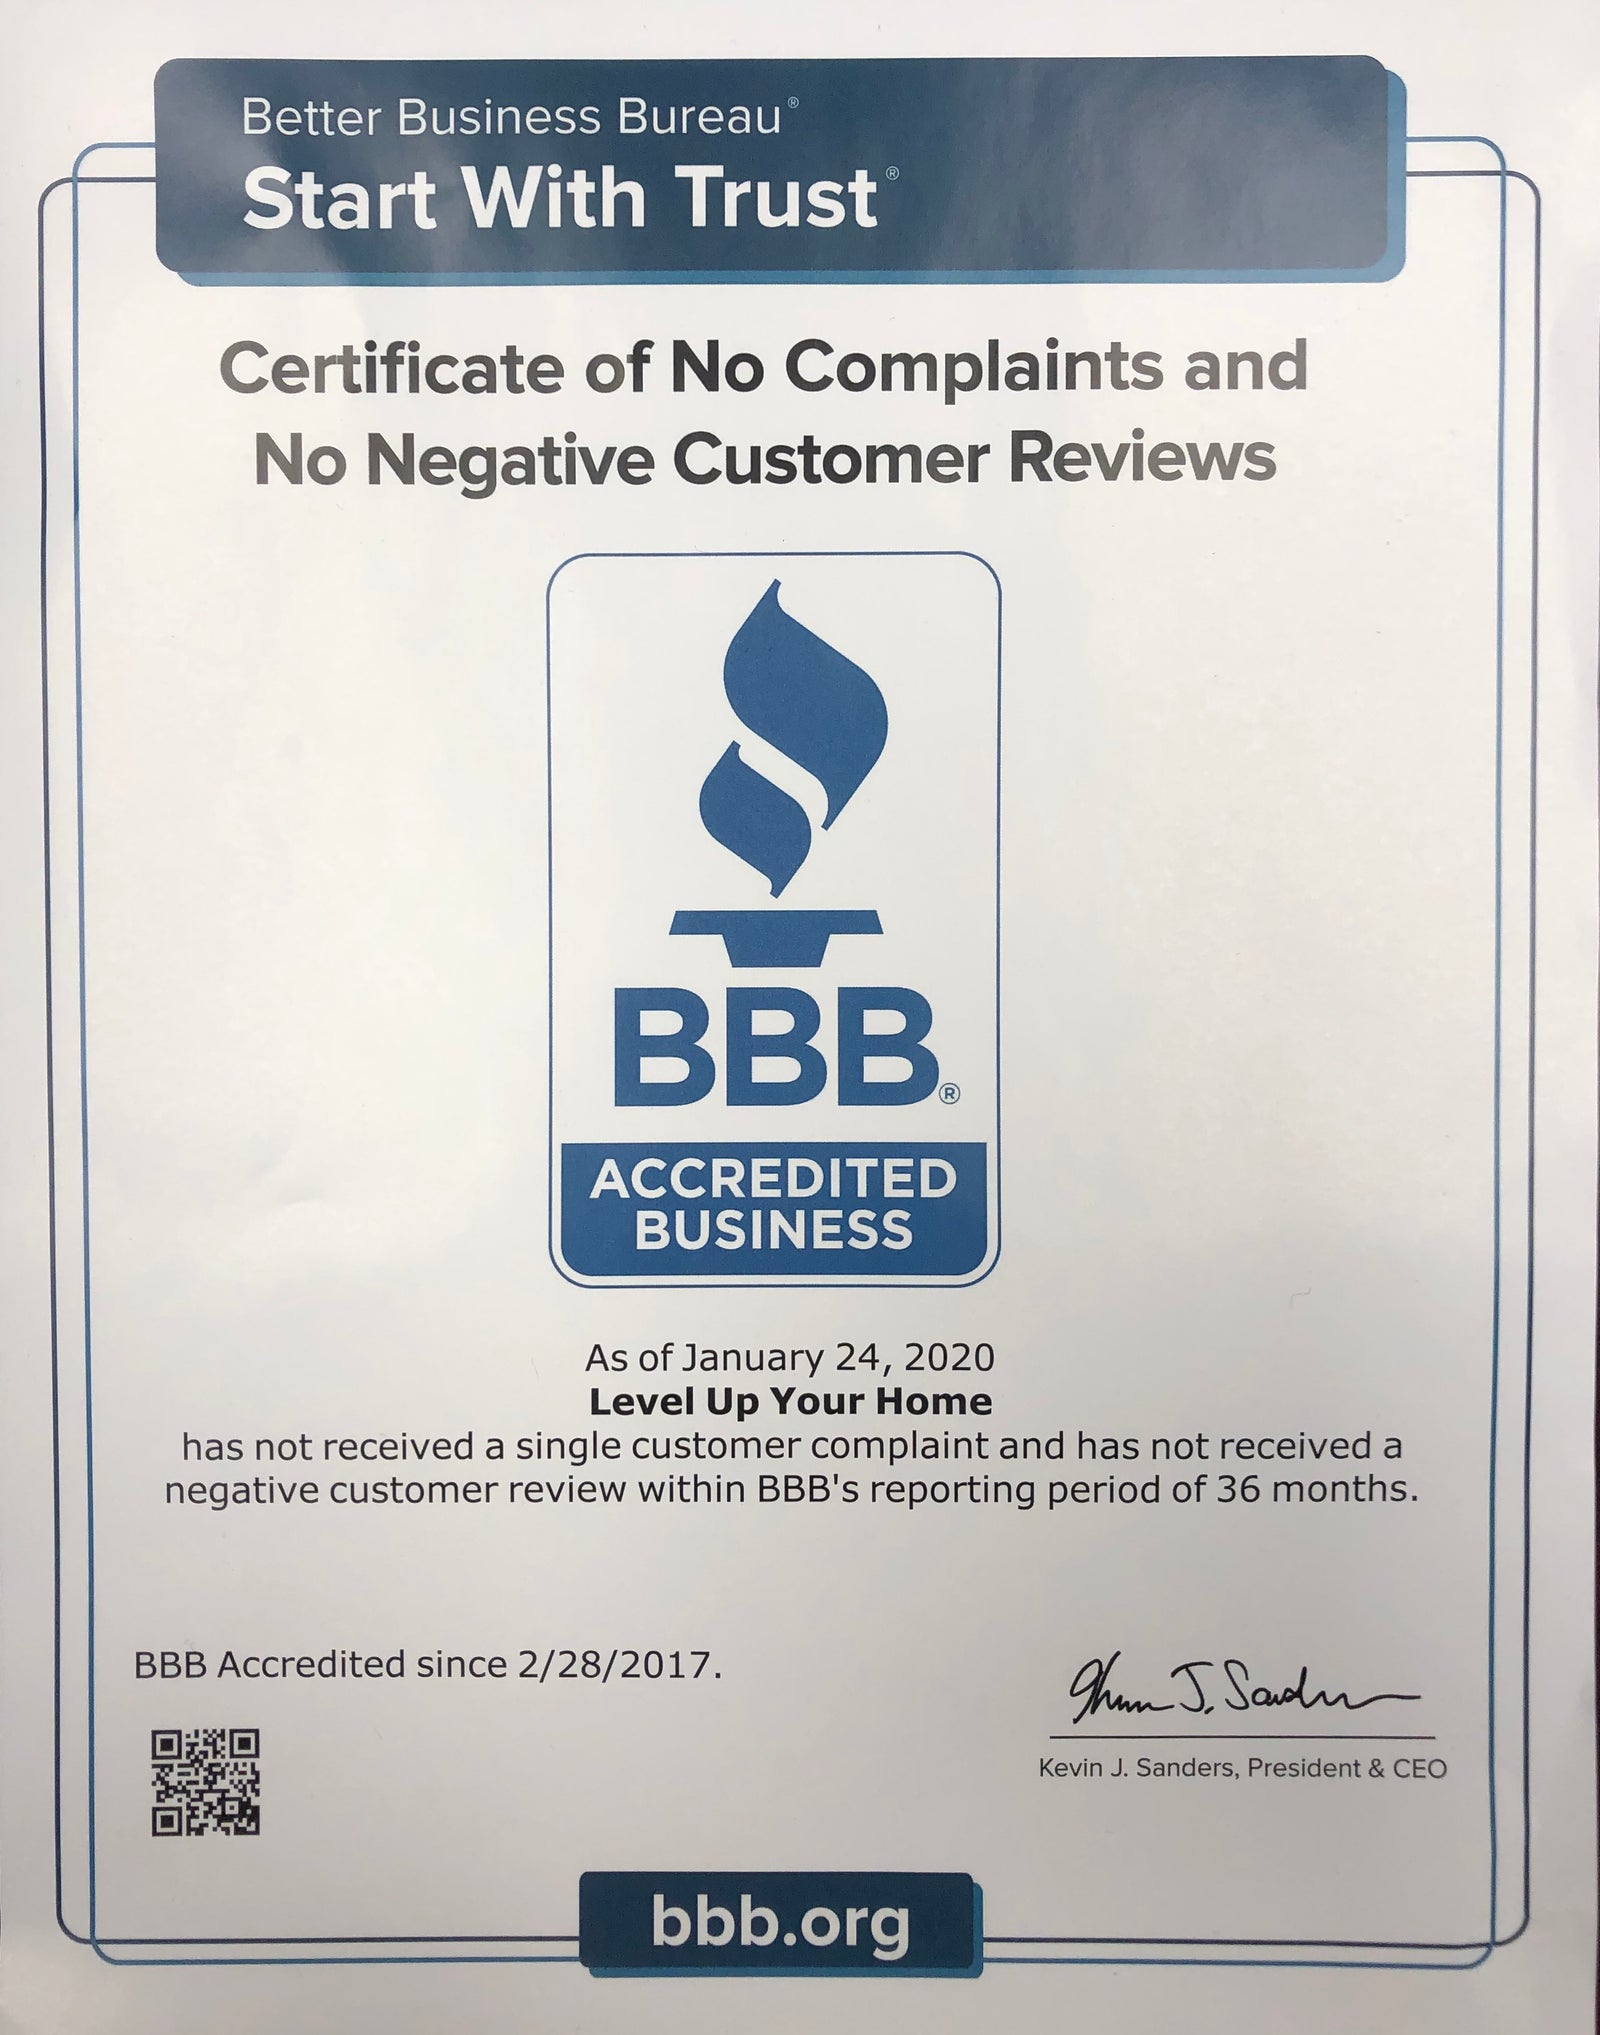 Better Business Bureau announces A+ rating for Level Up